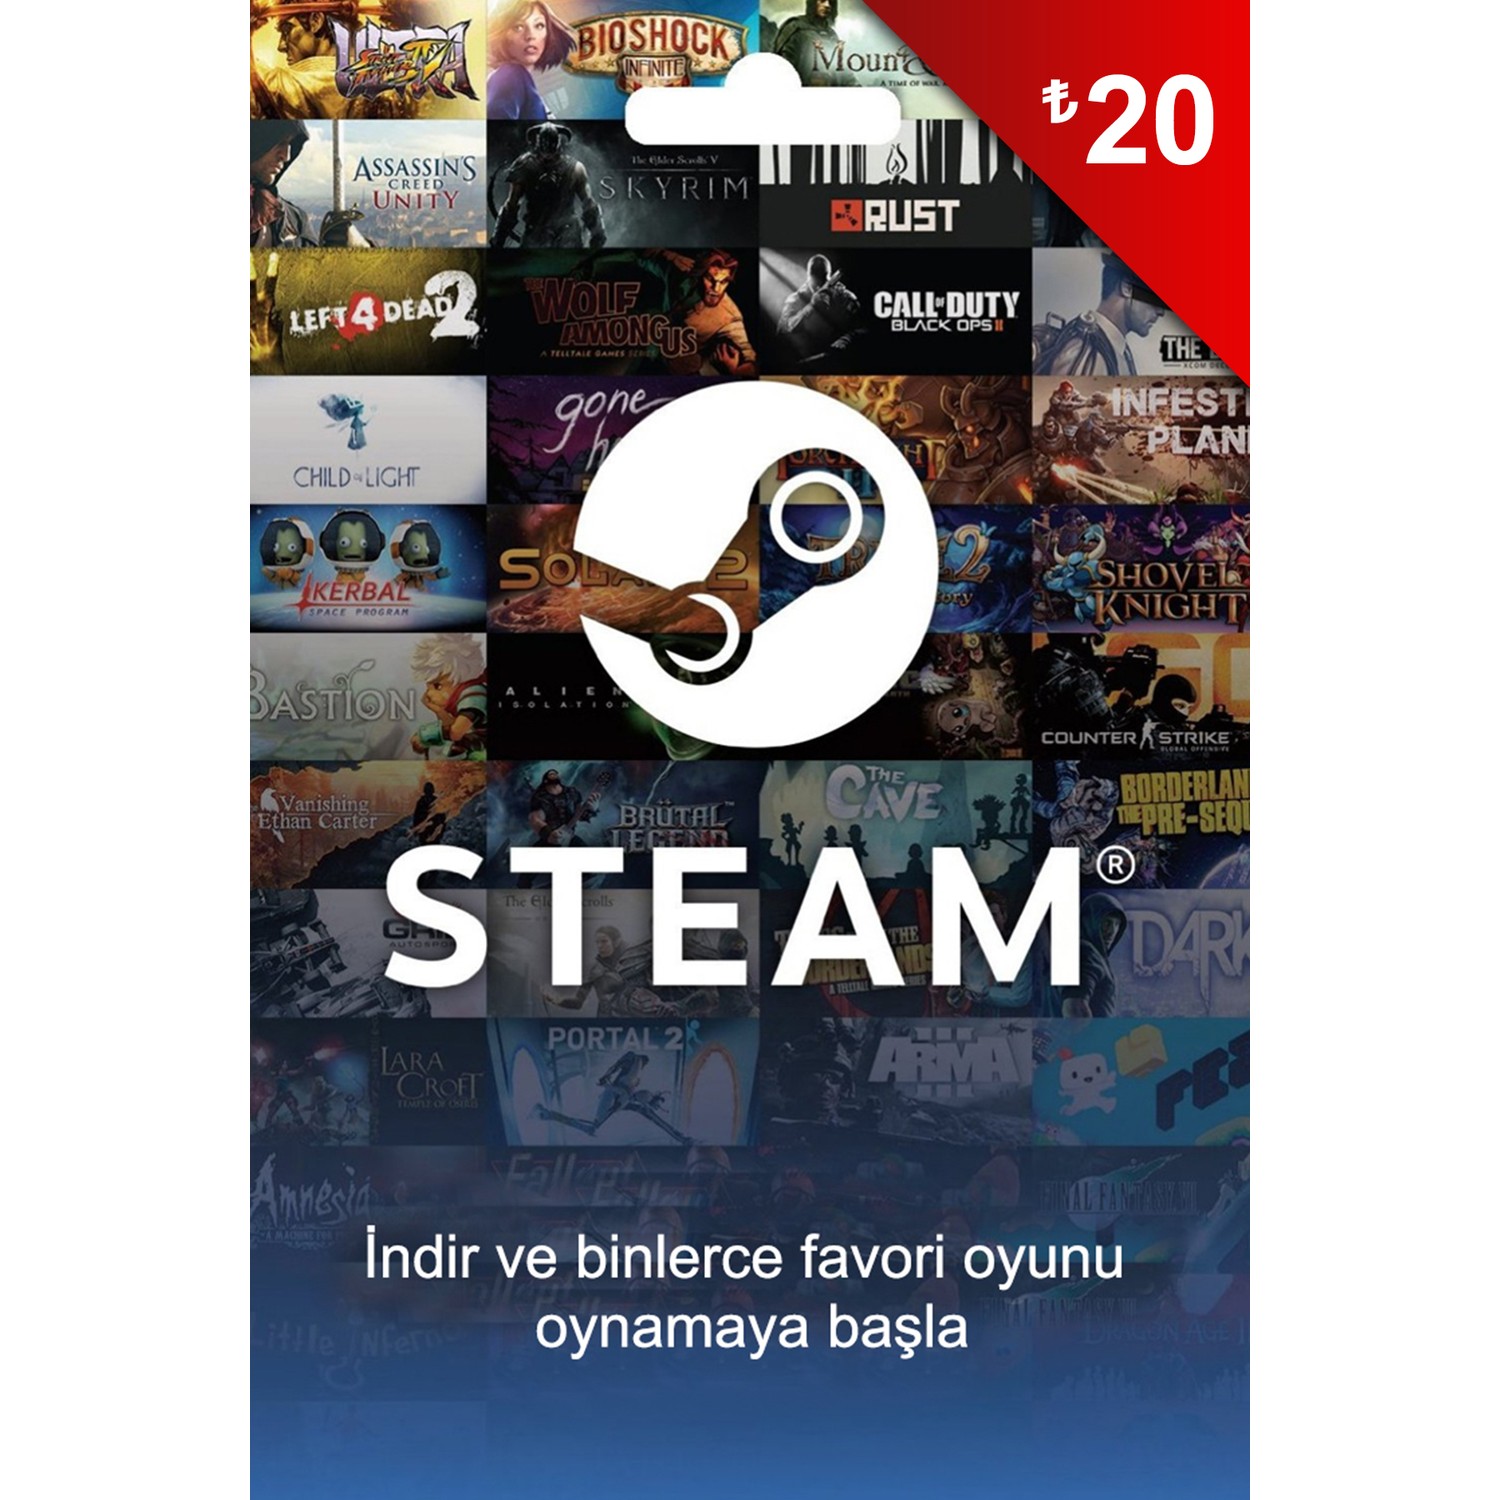 Купить турецкий стим. Карта Steam. Steam Gift Card. Steam обложка. Стим Турция.